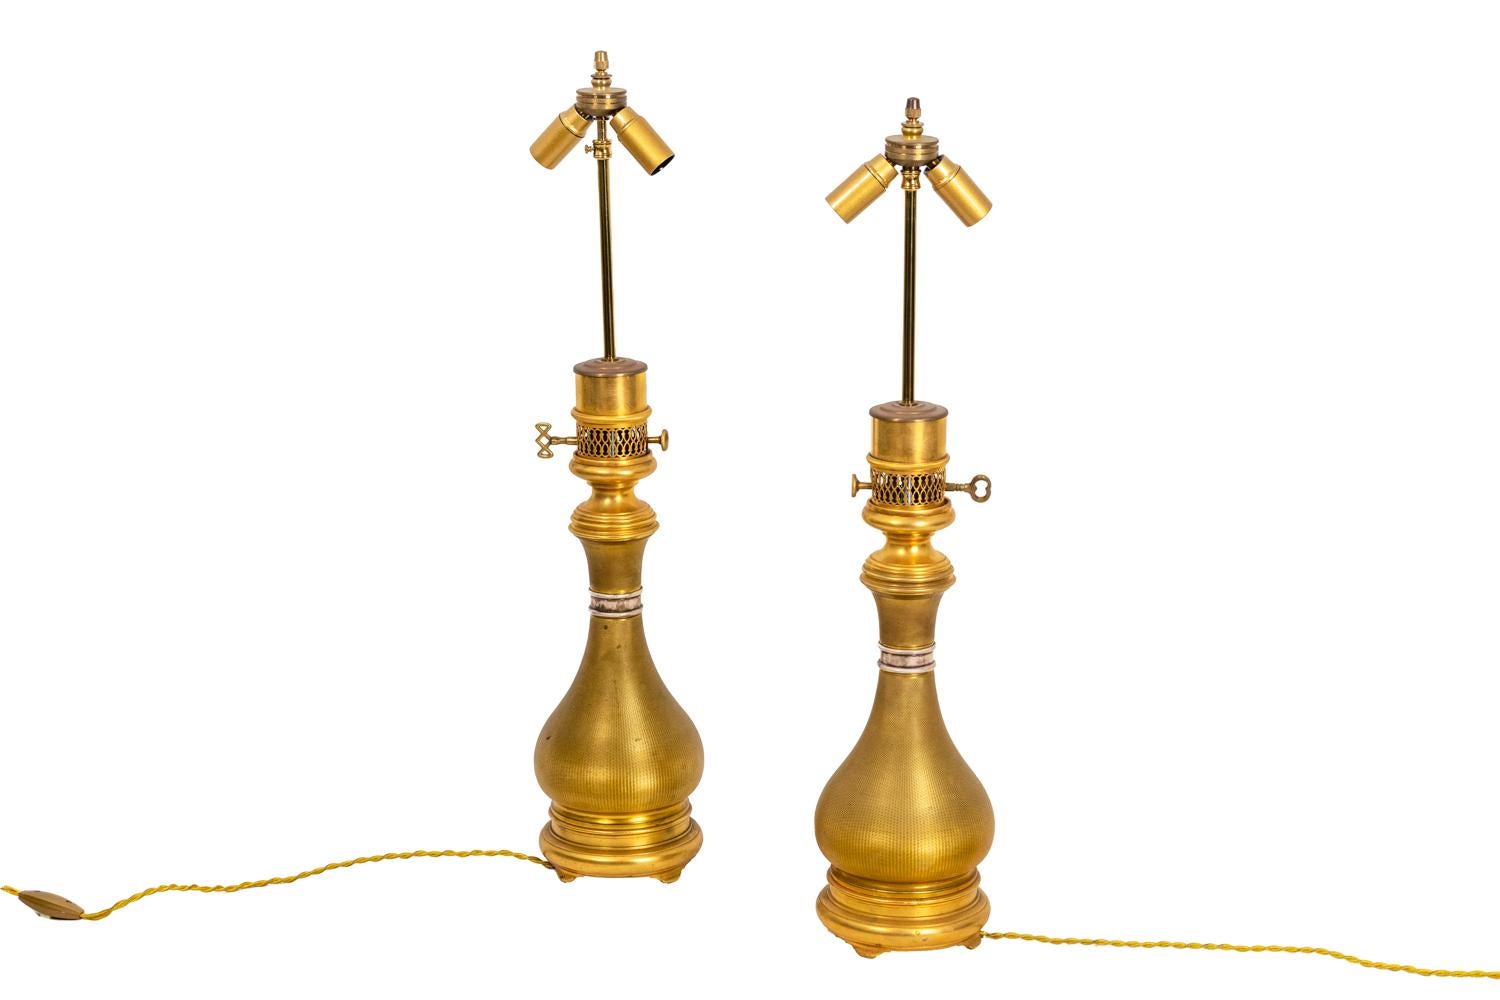 Maison Gagneau, signé.
Paire de lampes de forme balustre en laiton doré guilloché. Ils reposent sur une base circulaire. Le col est entouré d'un anneau argenté.

Estampillé 